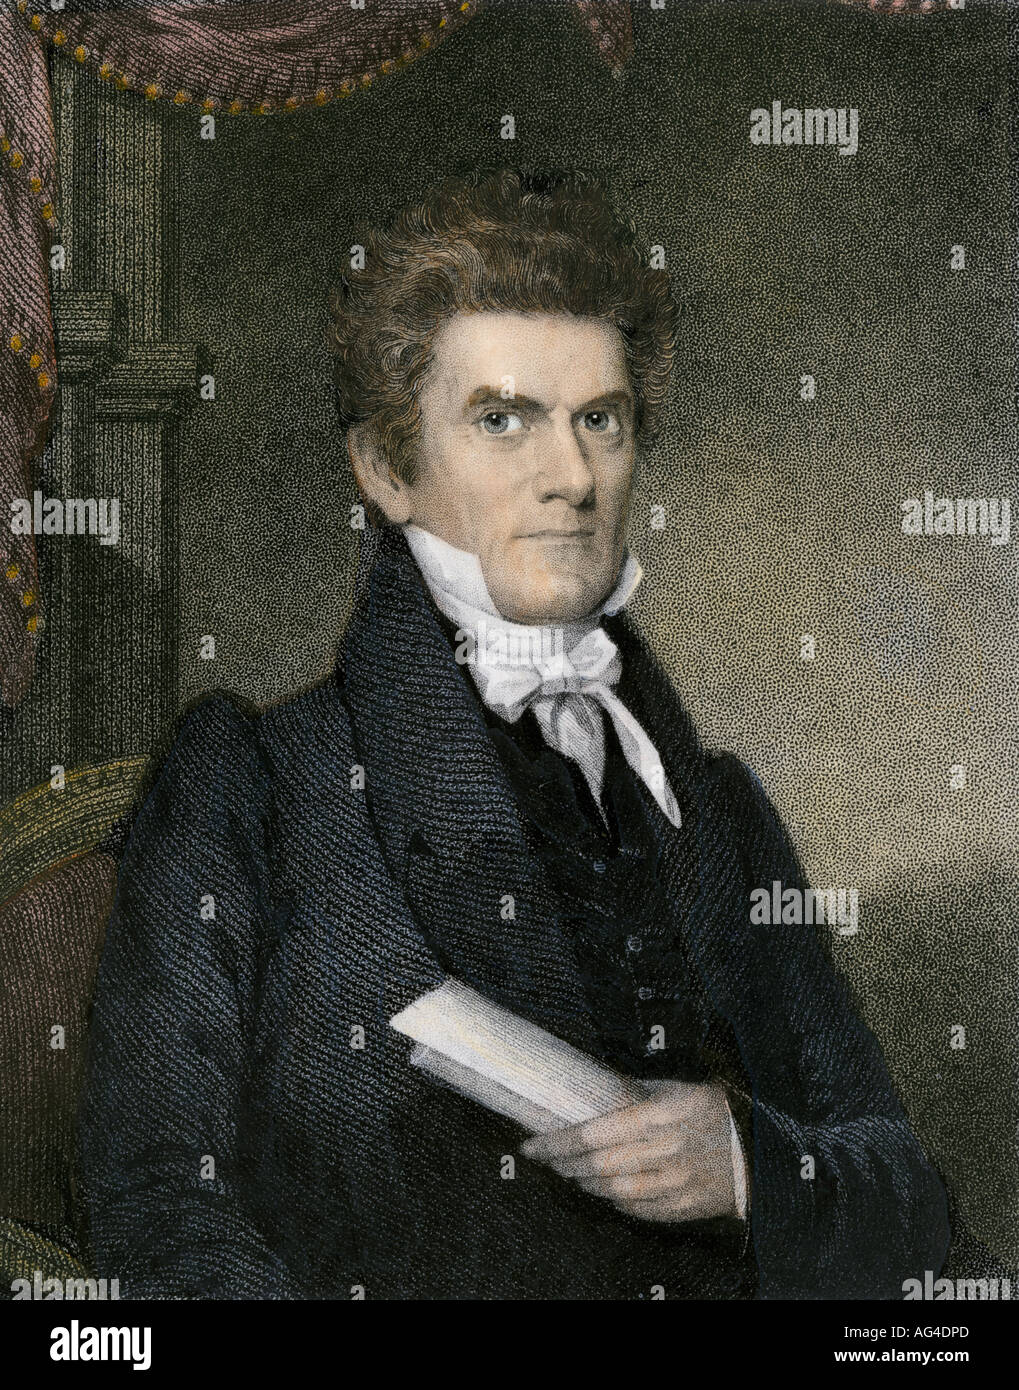 John C. Calhoun le Vice-président américain. À la main, gravure sur acier Banque D'Images